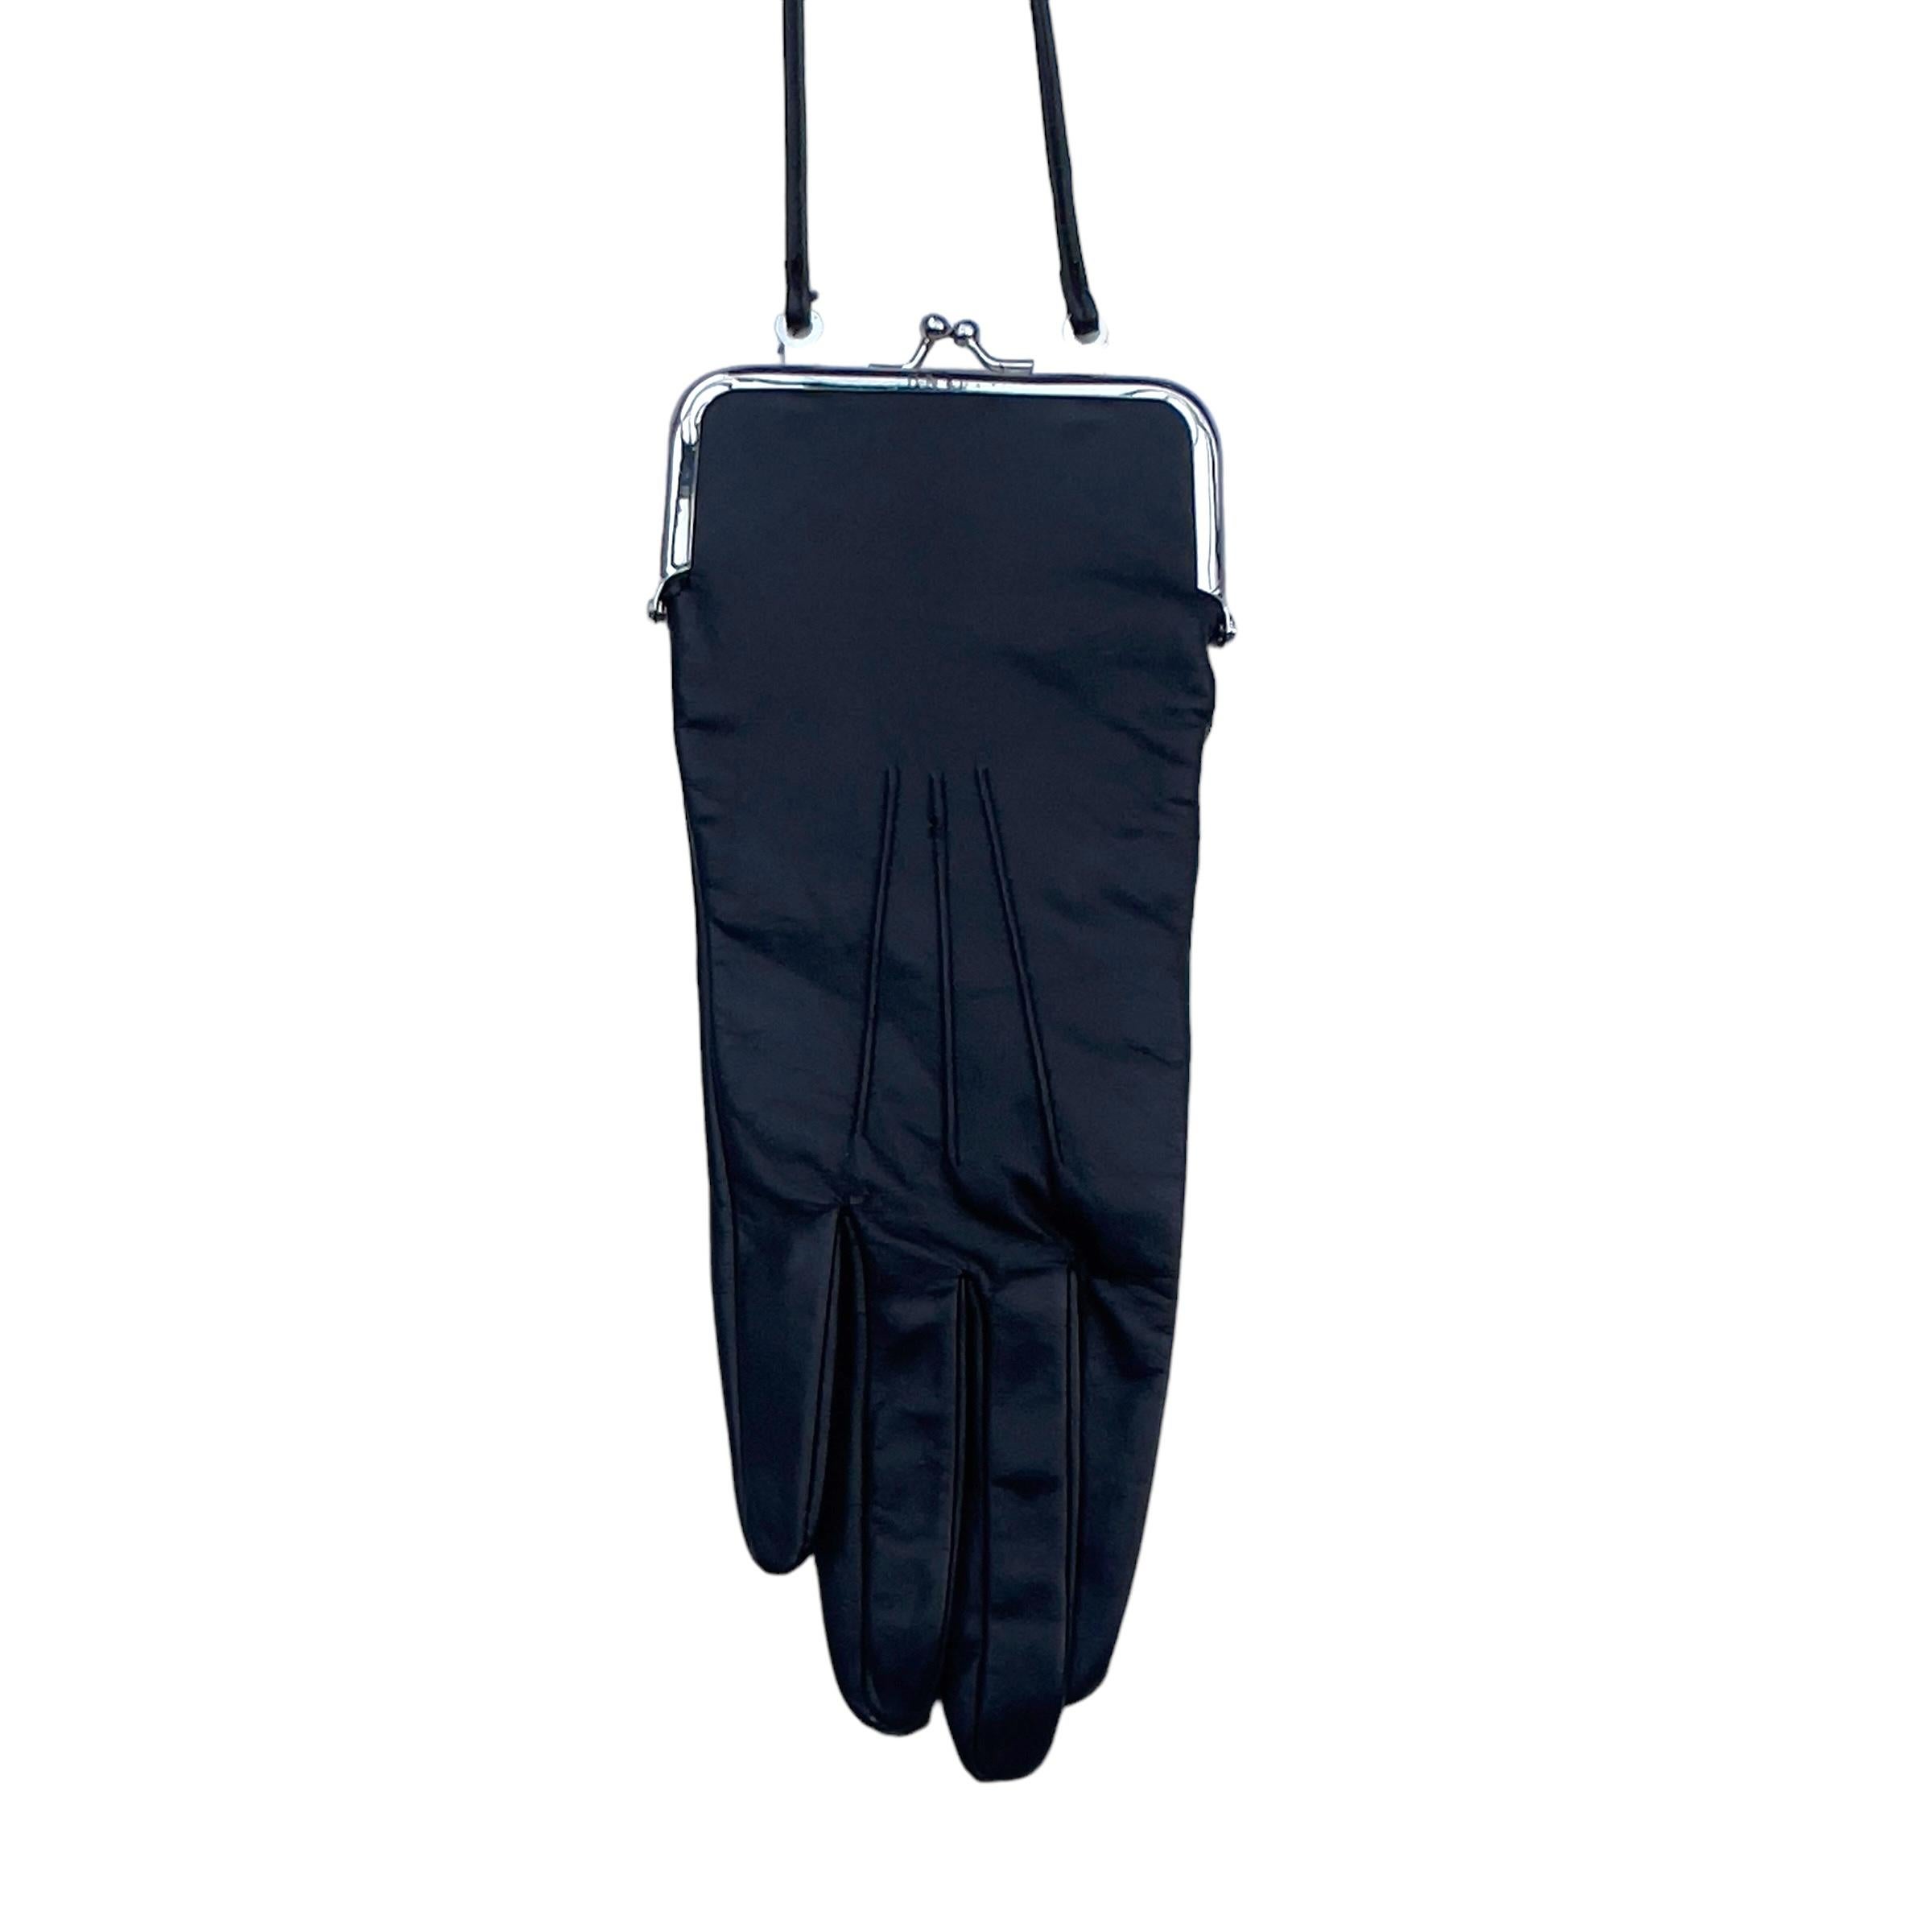 Porte-monnaie/sac à gants en cuir véritable noir épuré de Maison Martin Margiela pour A&M. Cette pièce est une édition limitée issue de la Collaboration 2012 entre Maison Martin Margiela et A&M, bien qu'elle ait été conçue à l'origine en 1999 et